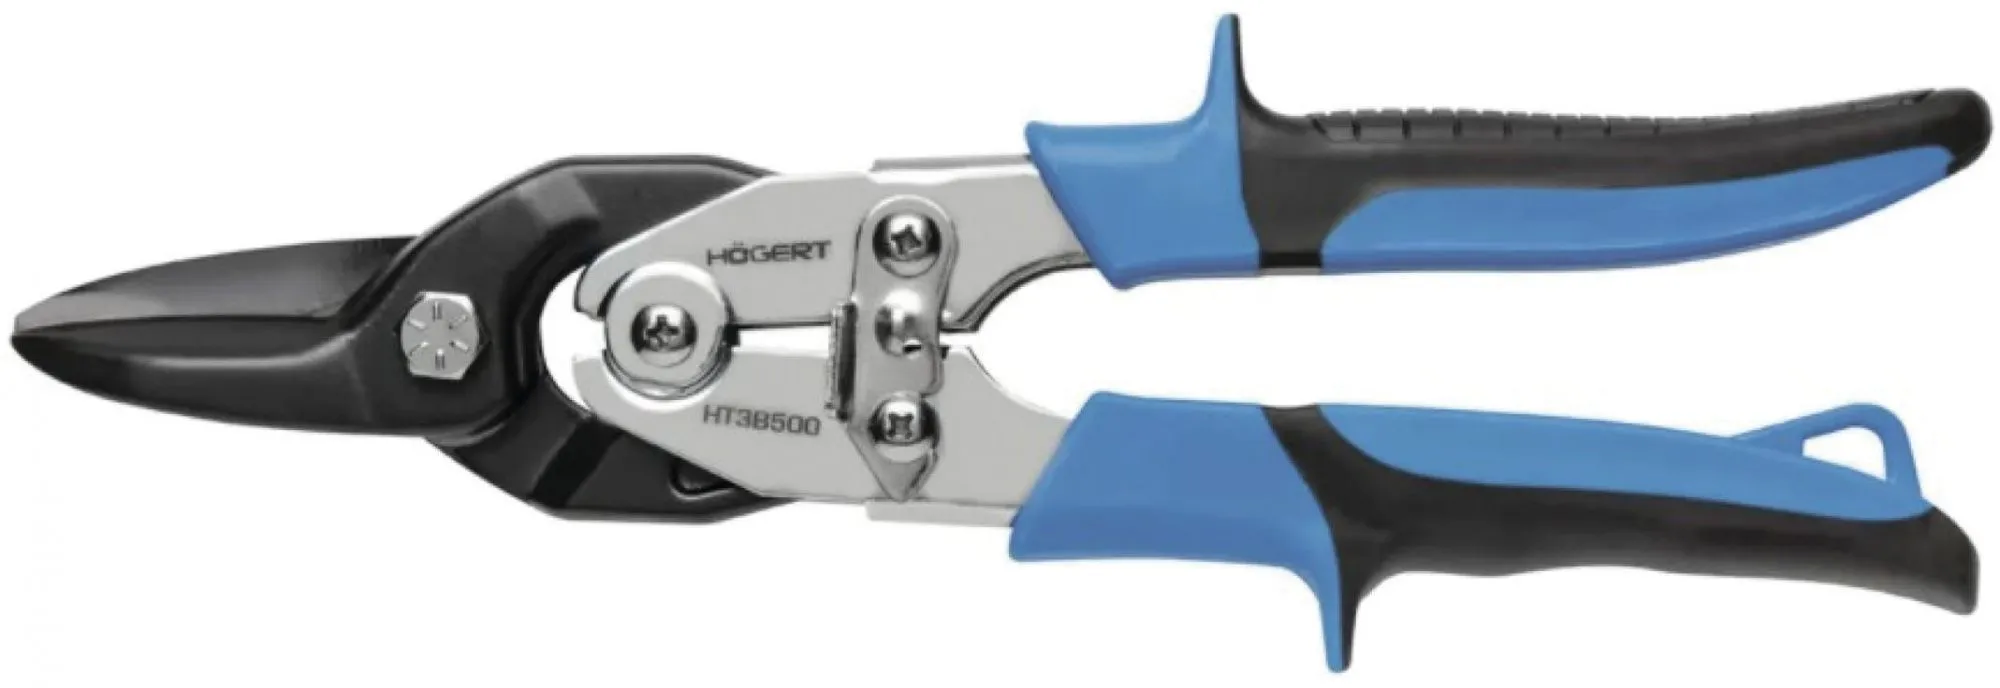 Ножницы по металлу 250мм прямые HOEGERT HT3B500